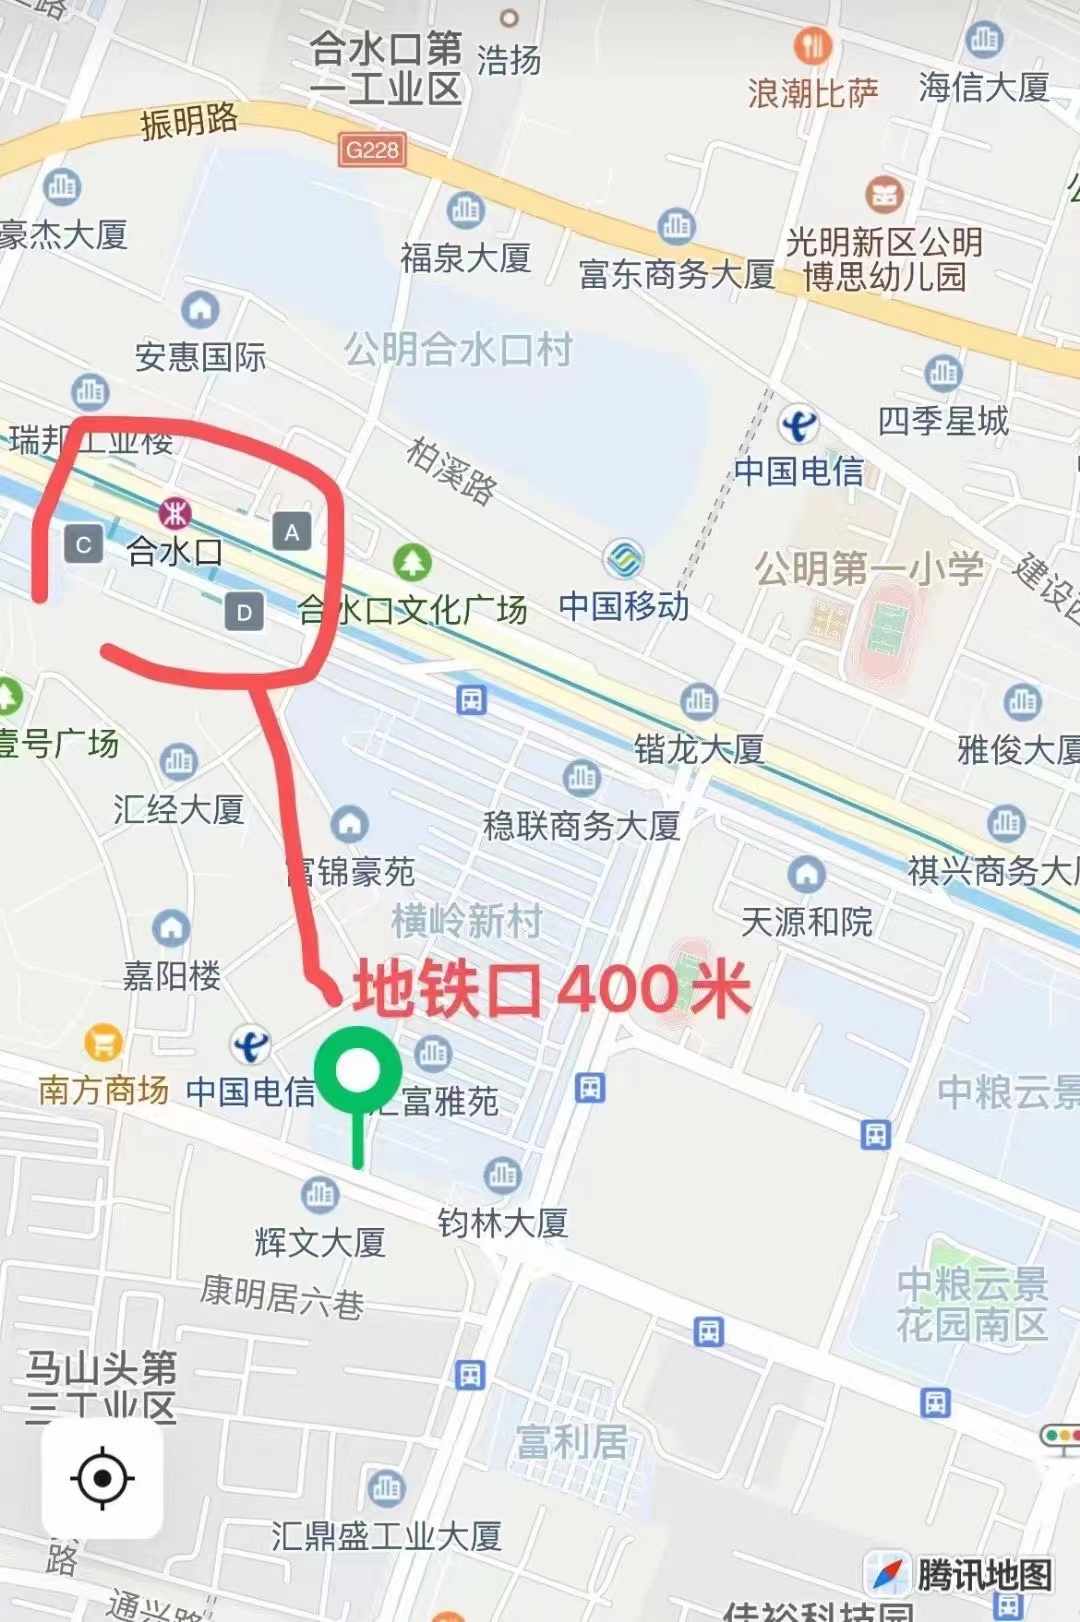 两房首付15万起【光明射手座】6号线合水口地铁站400米(图2)